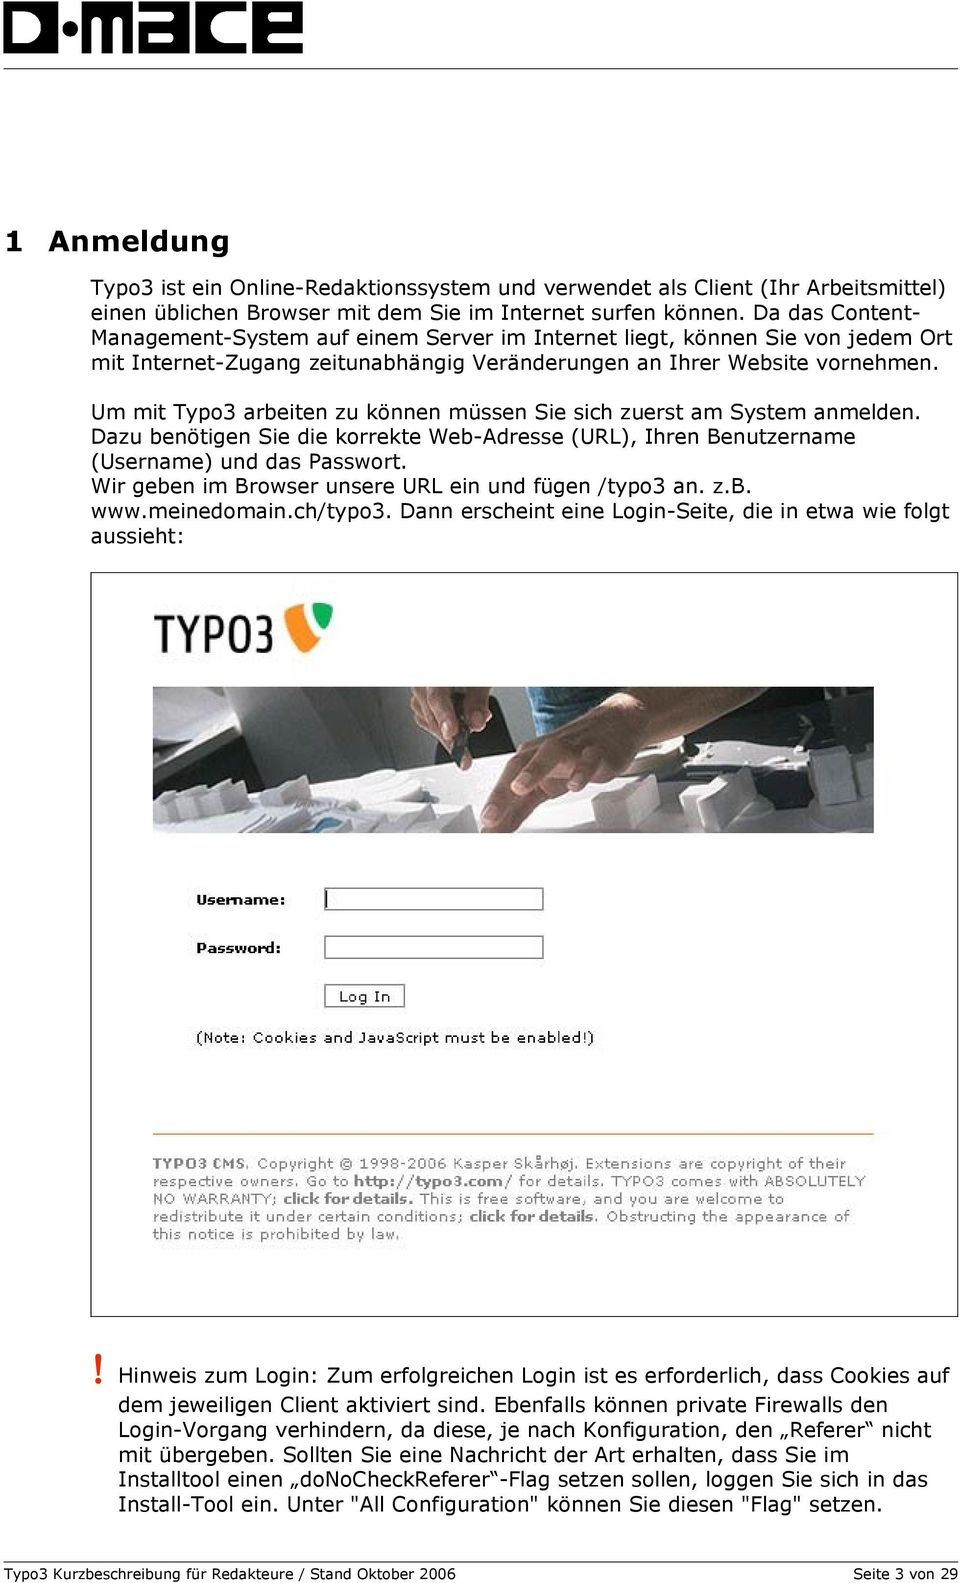 Um mit Typo3 arbeiten zu können müssen Sie sich zuerst am System anmelden. Dazu benötigen Sie die korrekte Web-Adresse (URL), Ihren Benutzername (Username) und das Passwort.